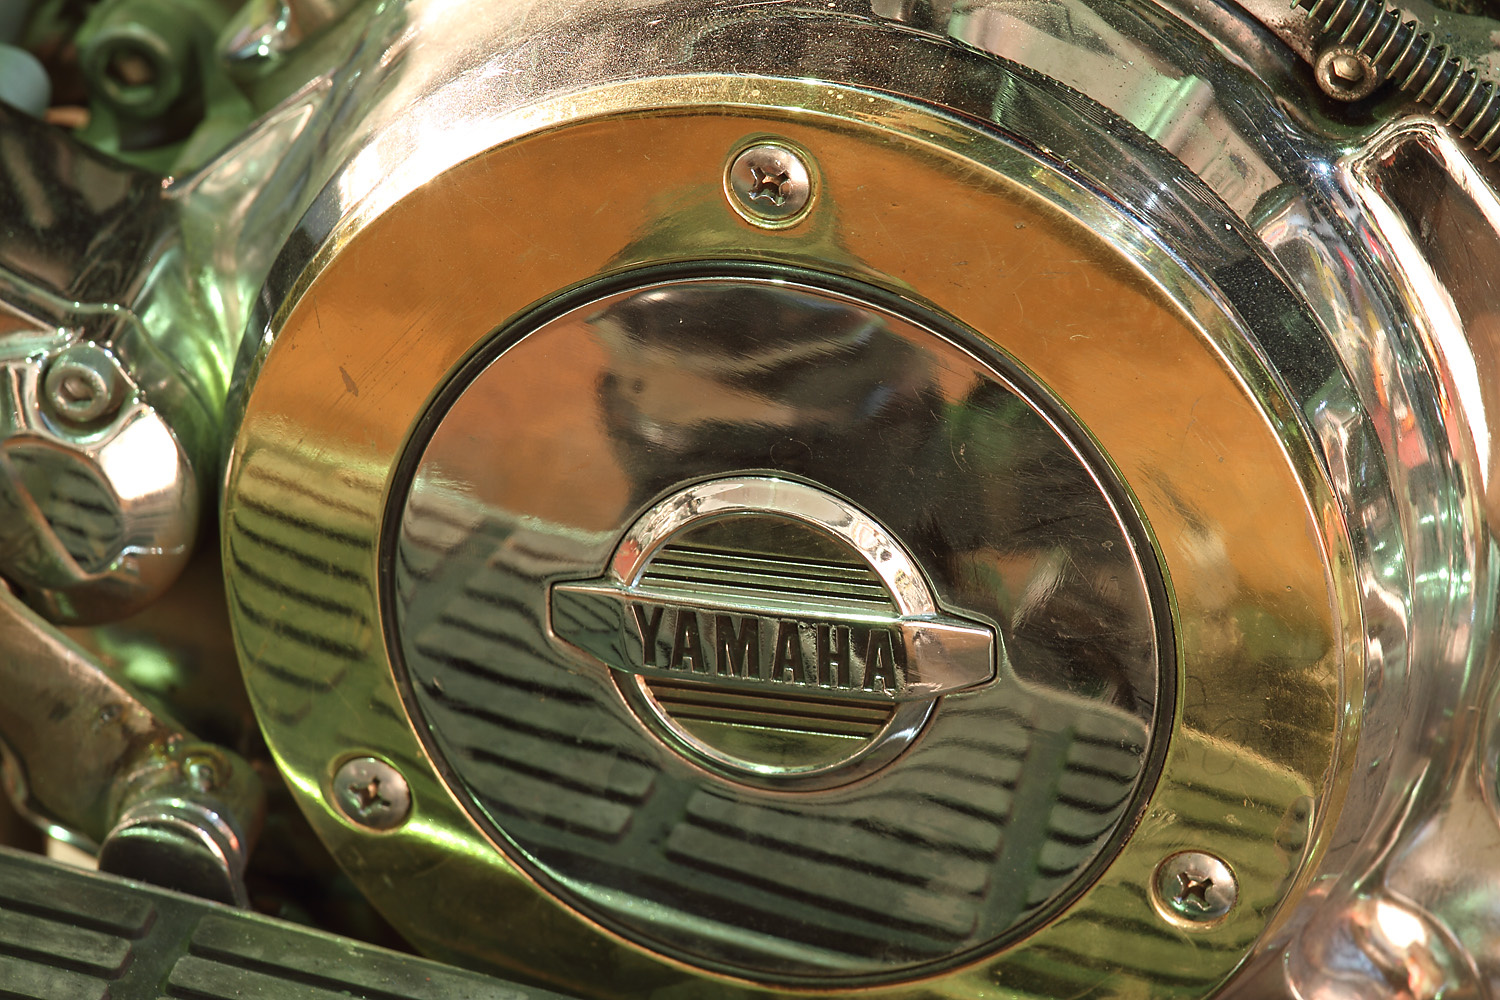 Yamaha motor